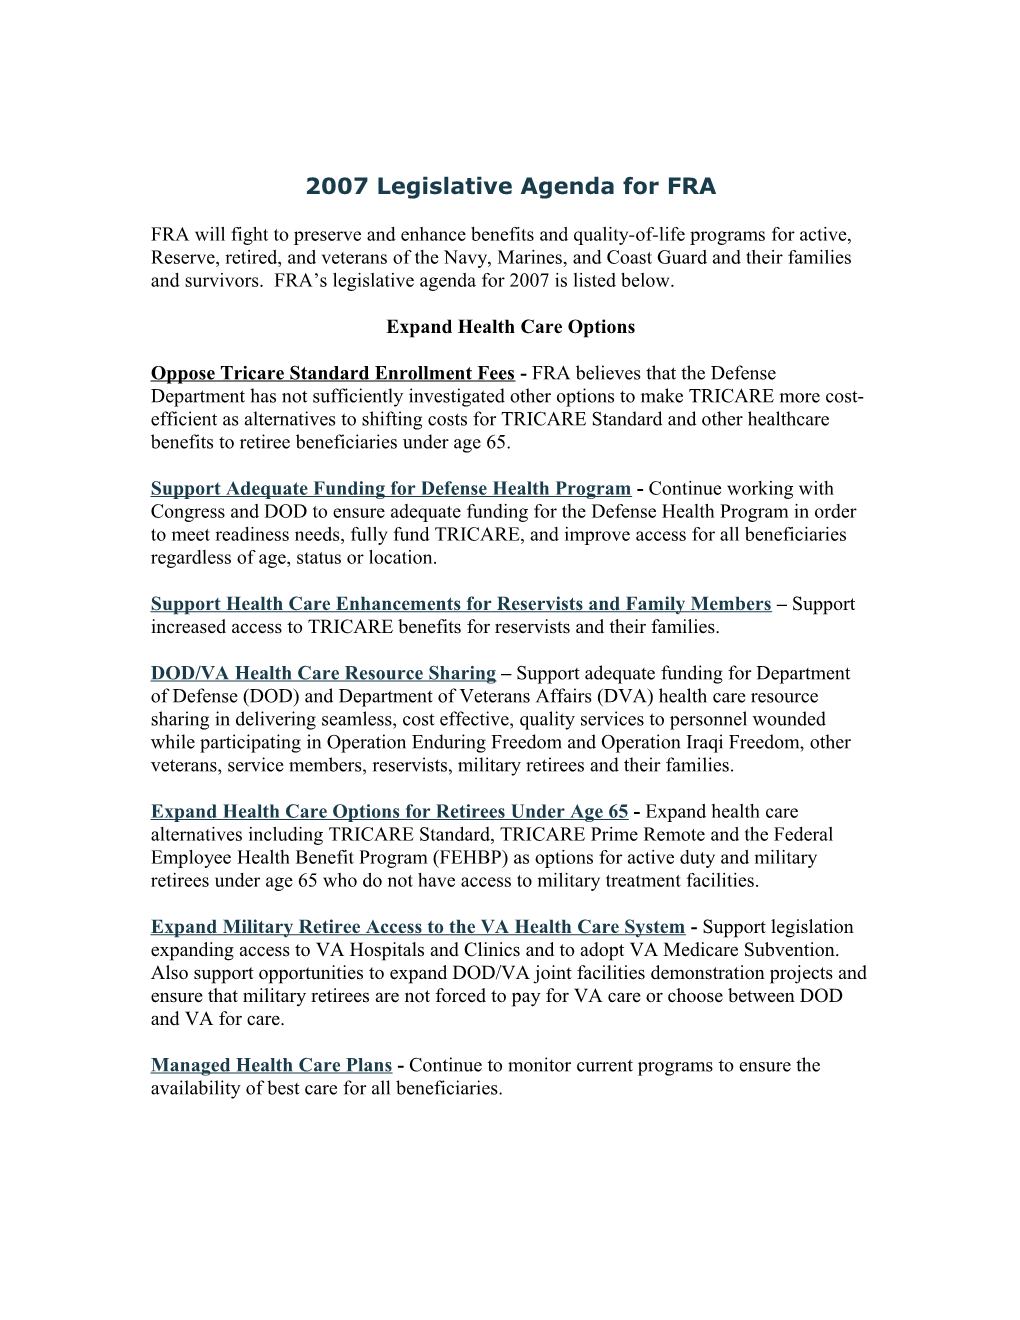 FRA's 2006 Legislative Agenda